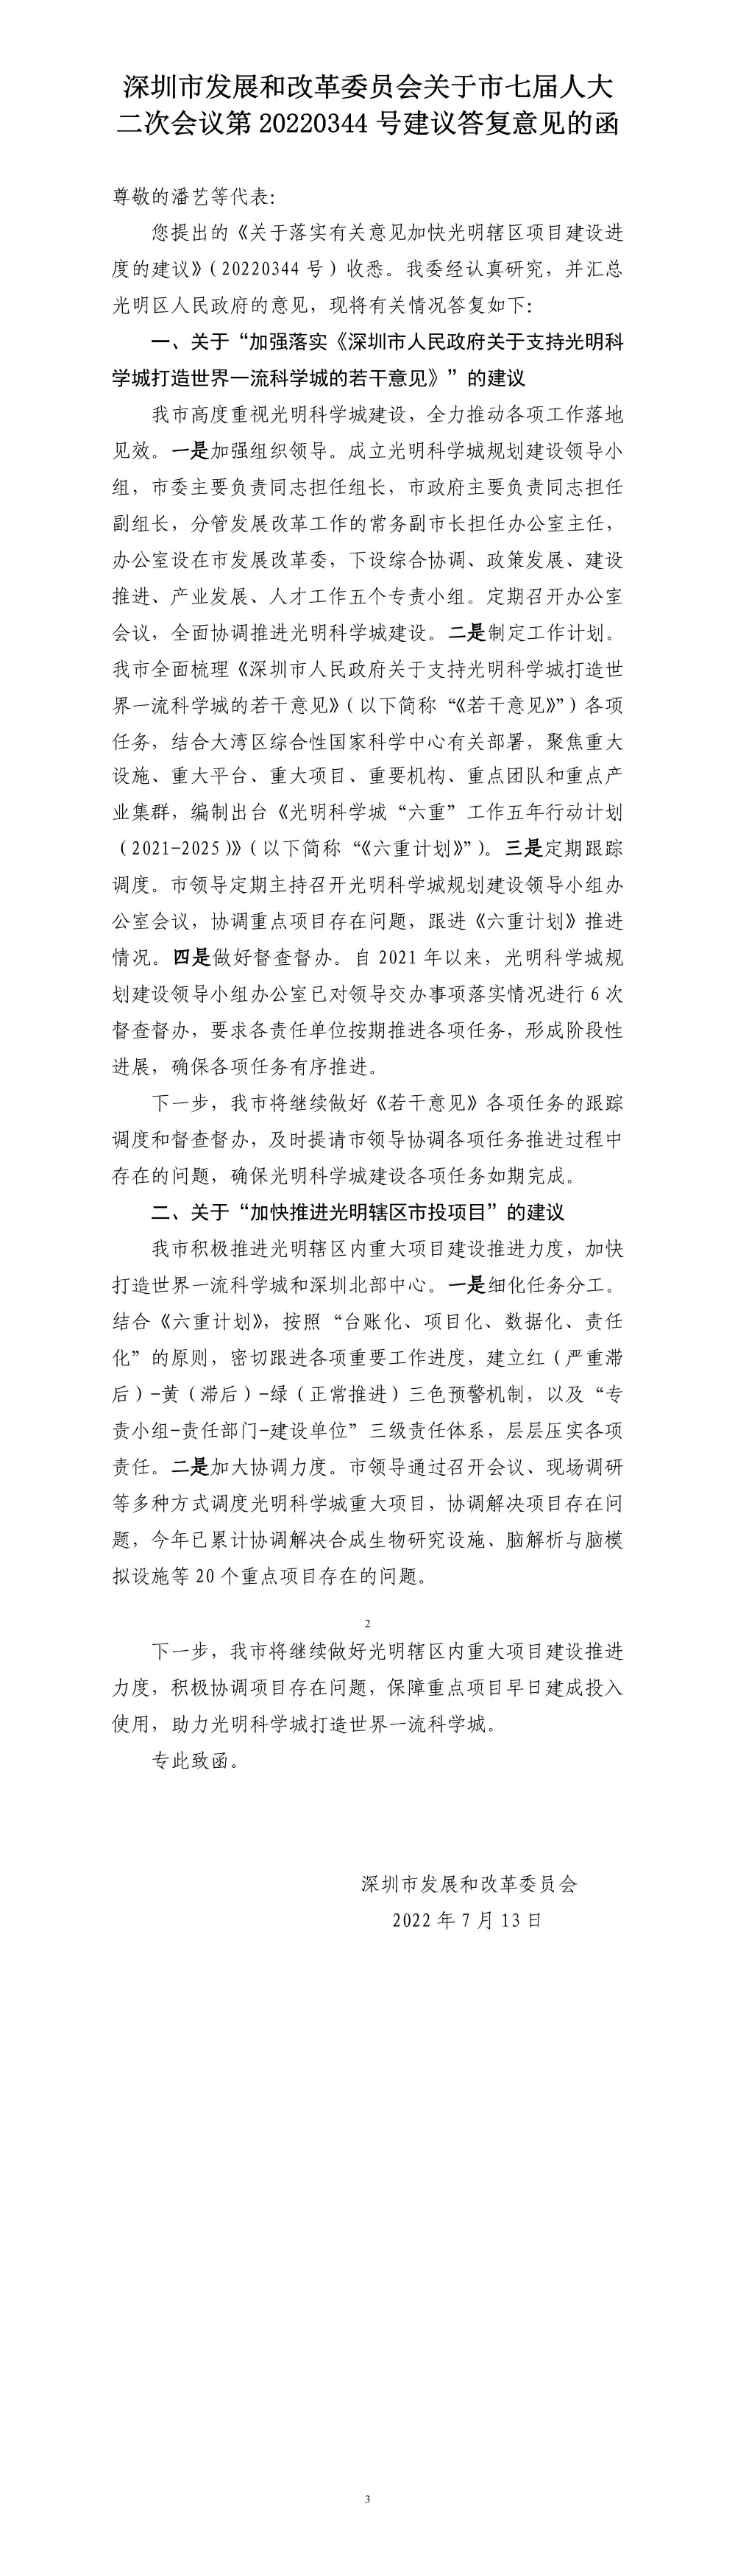 深圳市发展和改革委员会关于市七届人大二次会议第20220344号建议答复意见的函.jpg